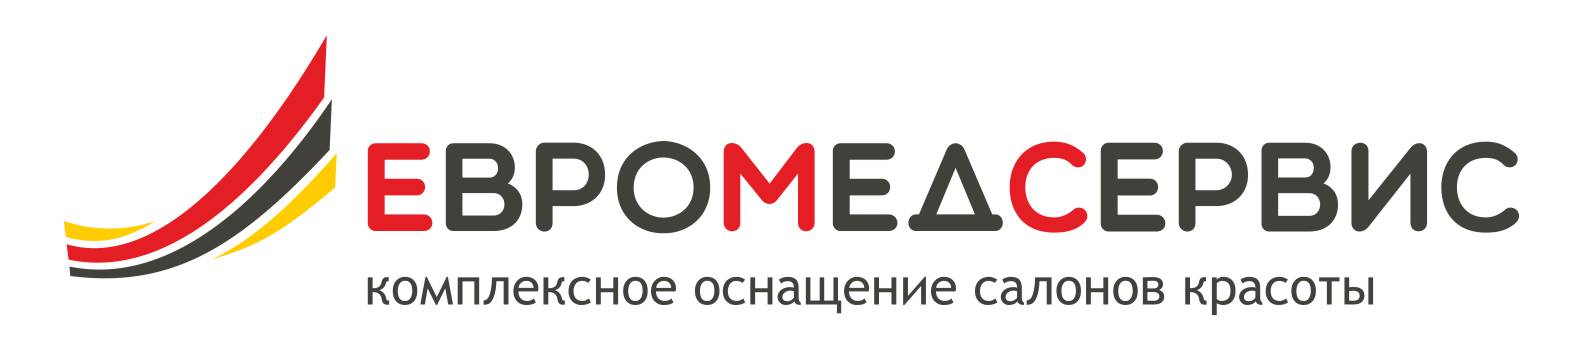 Логотип компании «Евромедсервис»